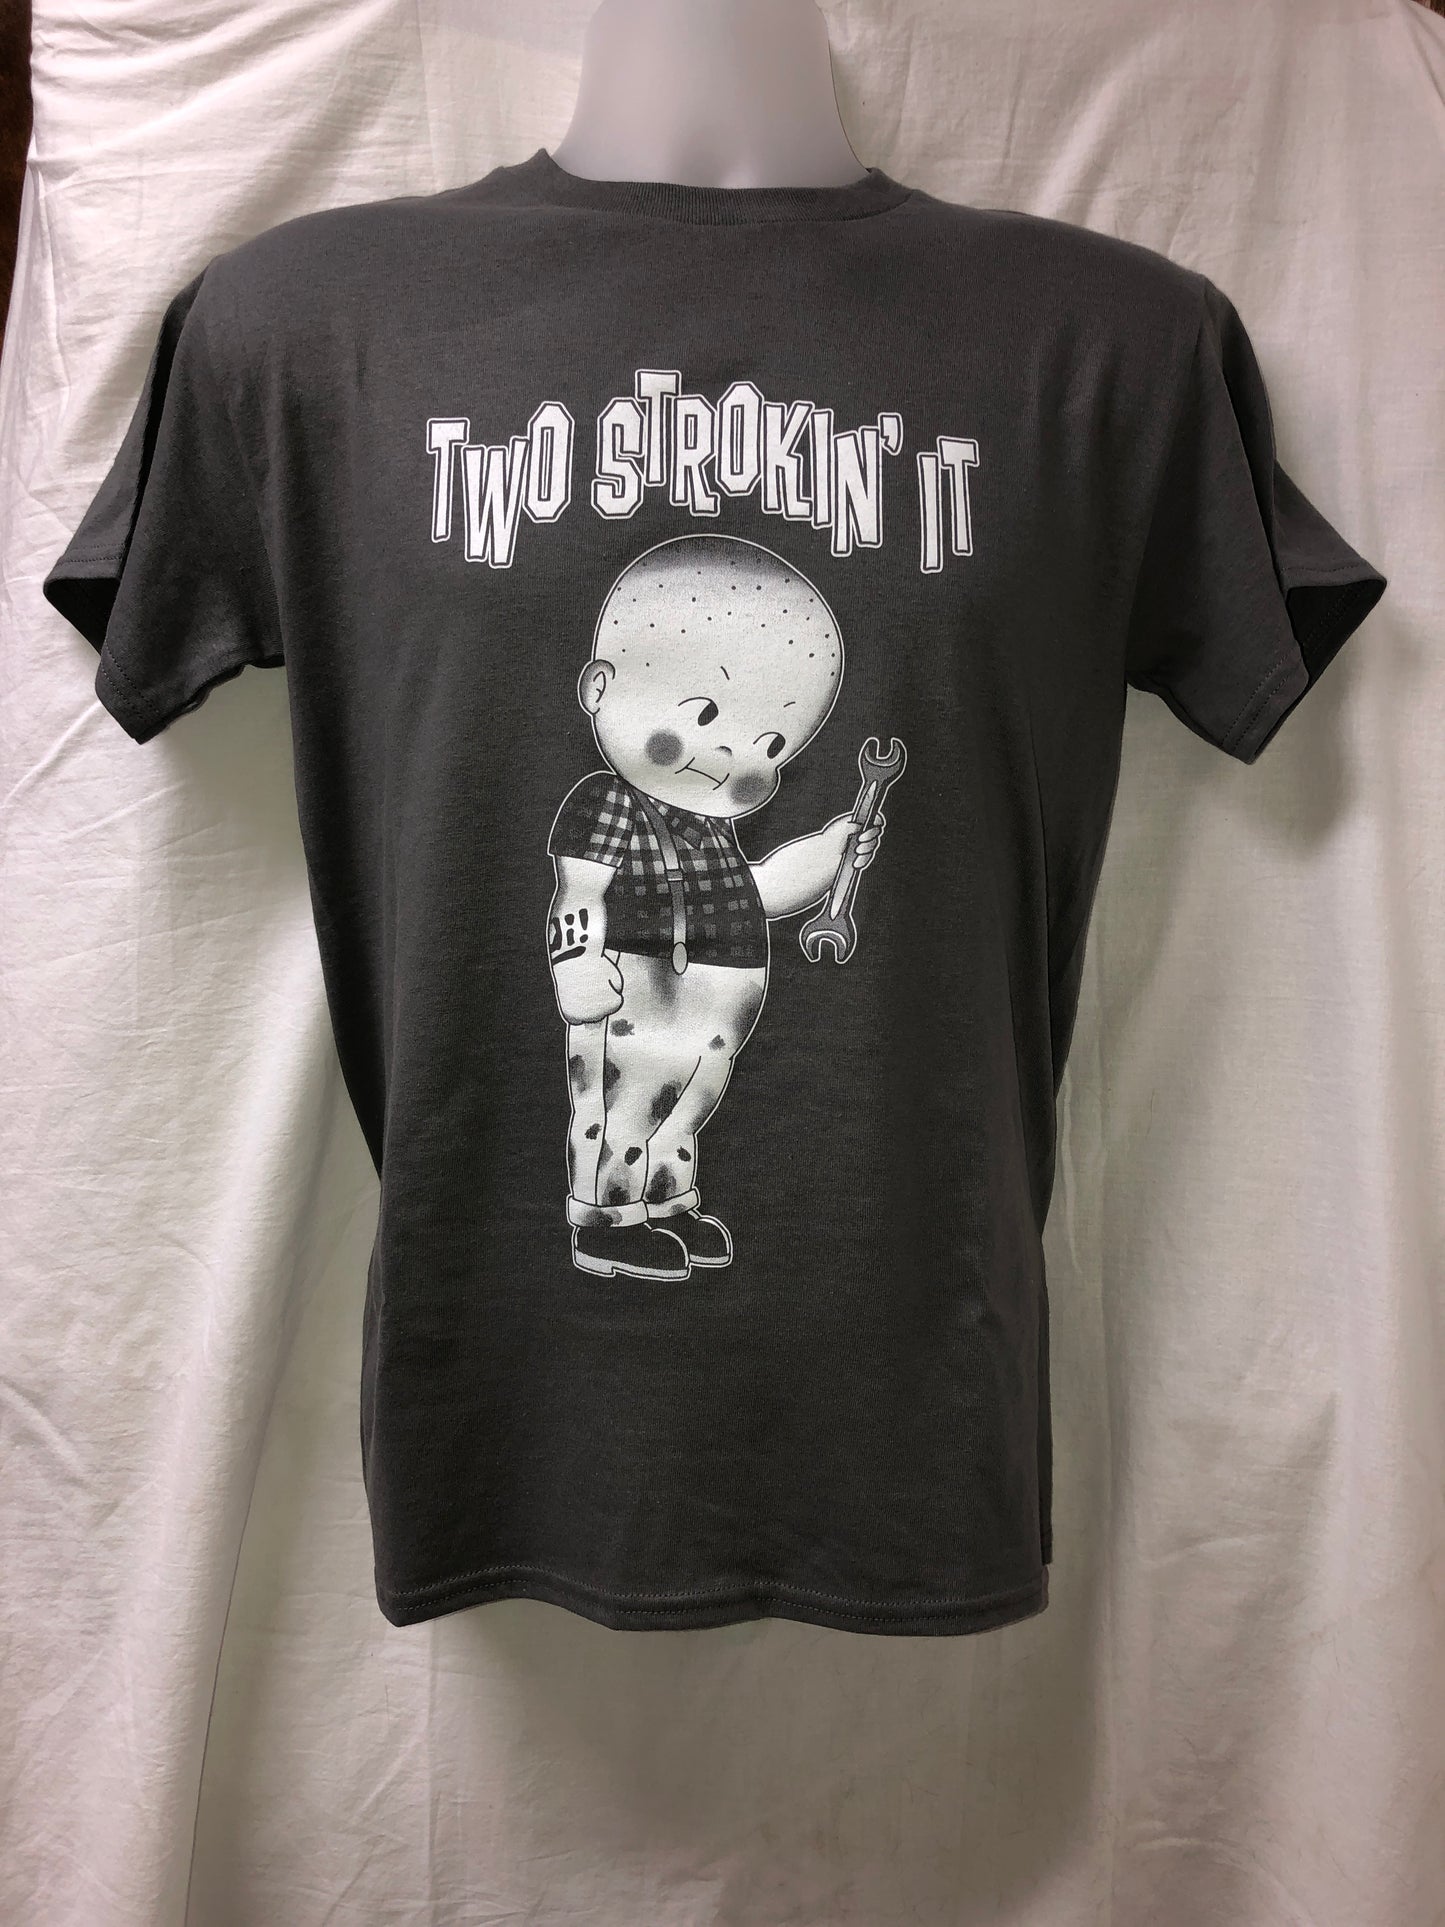 Two Strokin' It - Kewpie Boy T-shirt